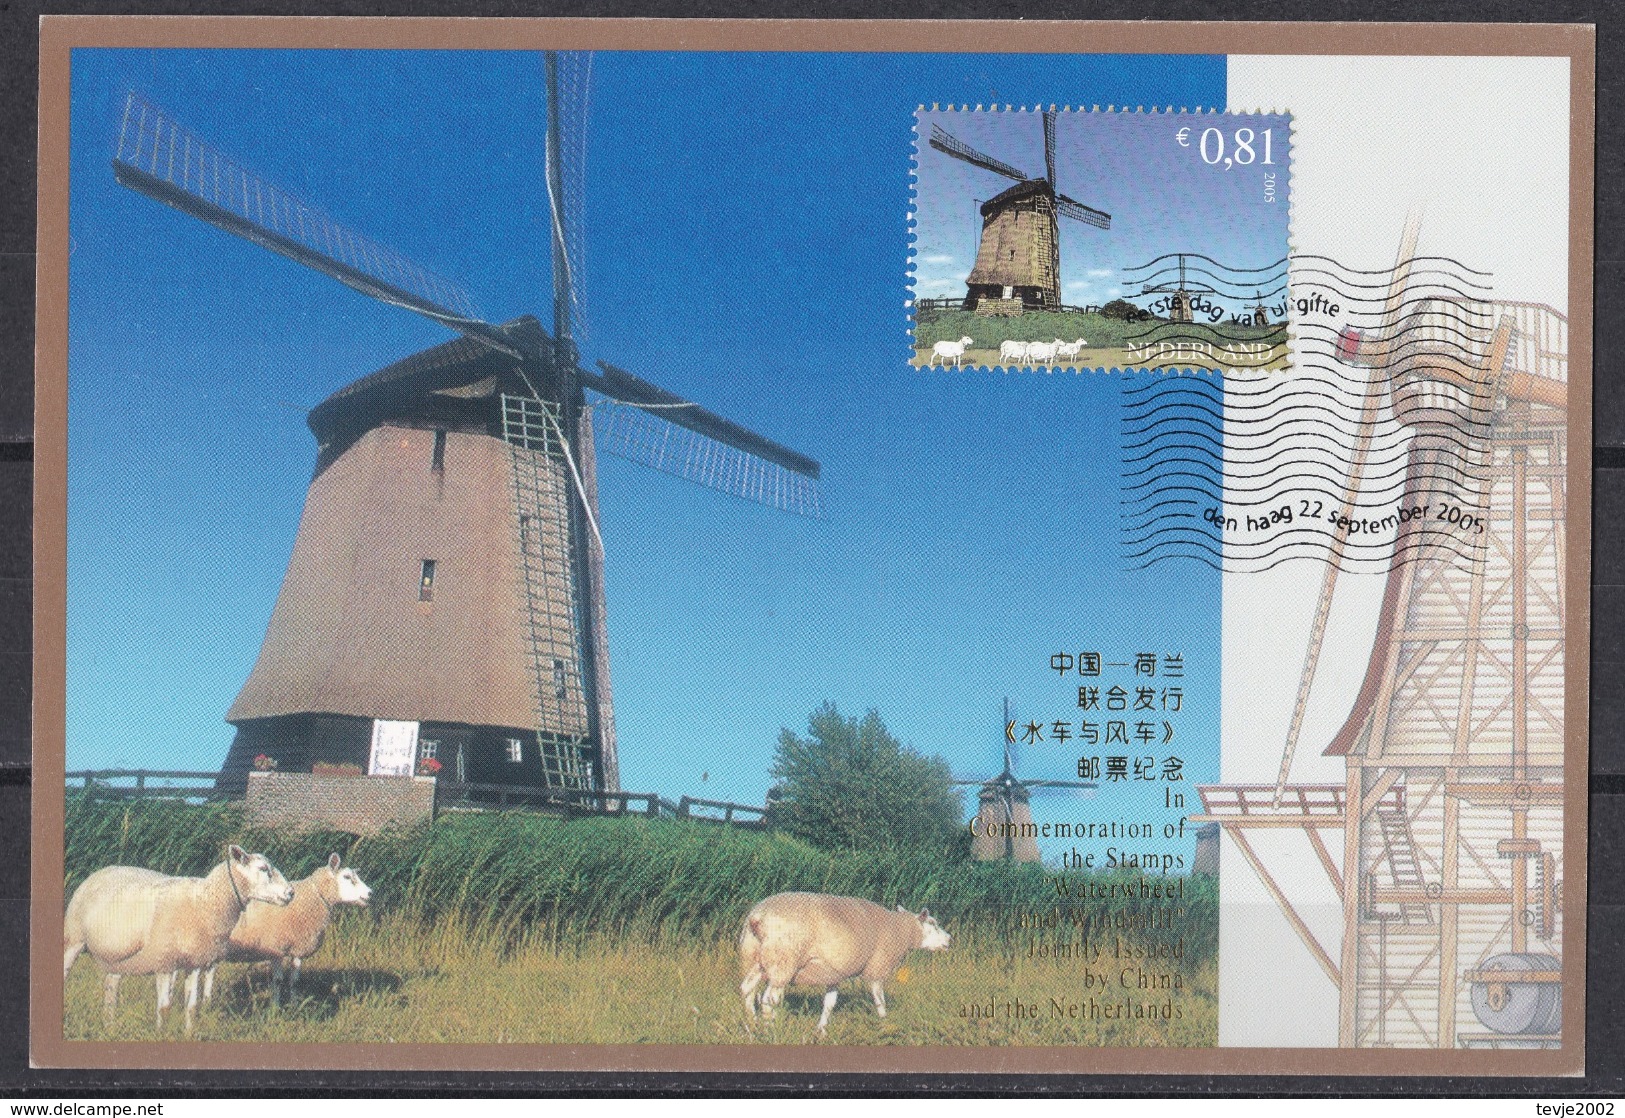 ei_ kleines Lot Marken und Belege - Mühlen Windmühlen mills windmills